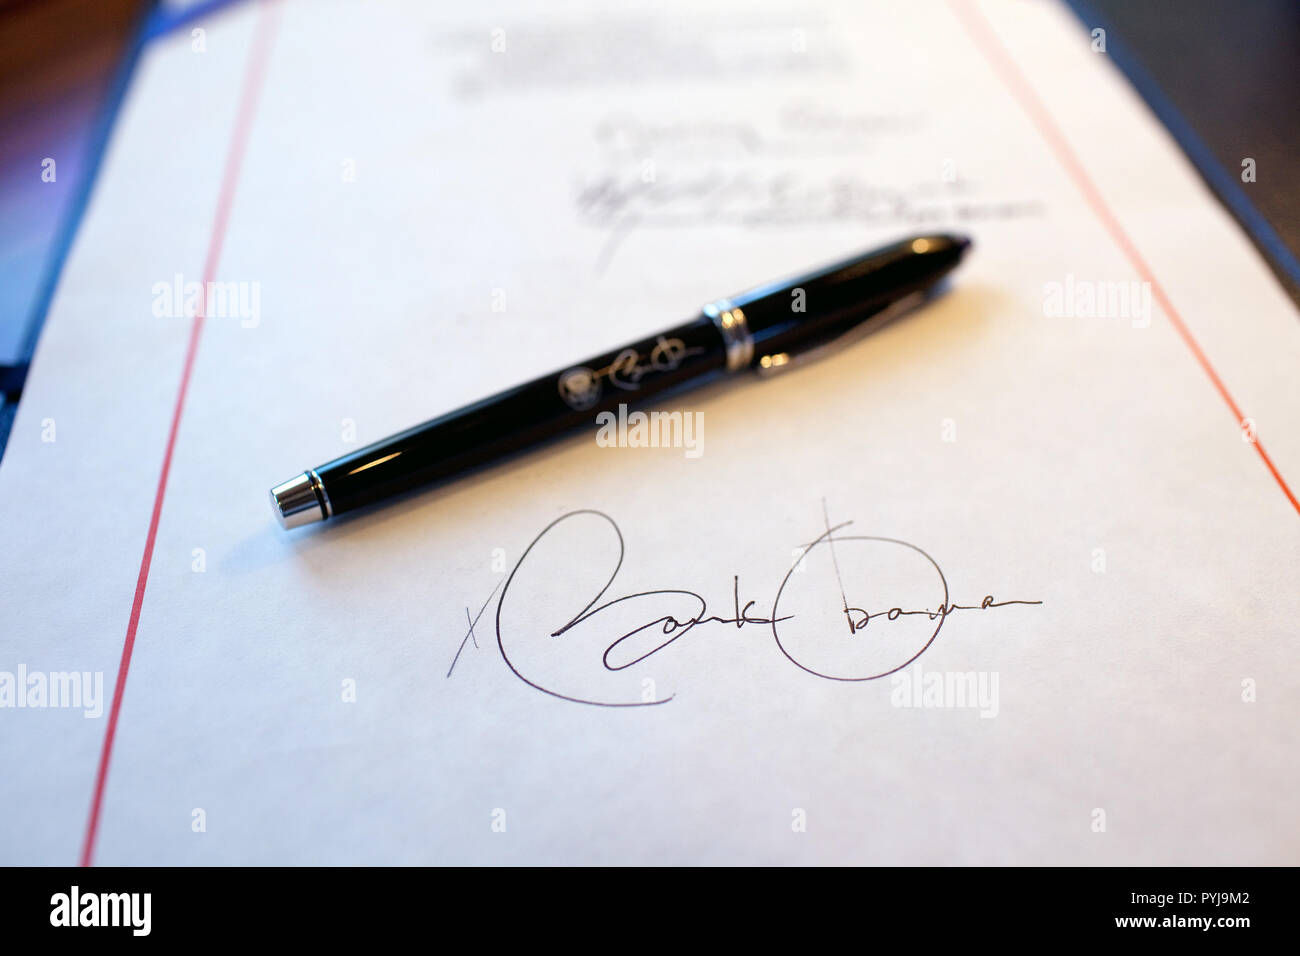 Bis detail von Präsident Obamas Unterschrift auf einer Rechnung in der Nähe und ein Stift für die Signatur verwendet, die an Bord der Air Force One auf einem Flug von Buckley Air Force Base, Denver Colorado nach Phoenix, Arizona 2/17/09. Stockfoto